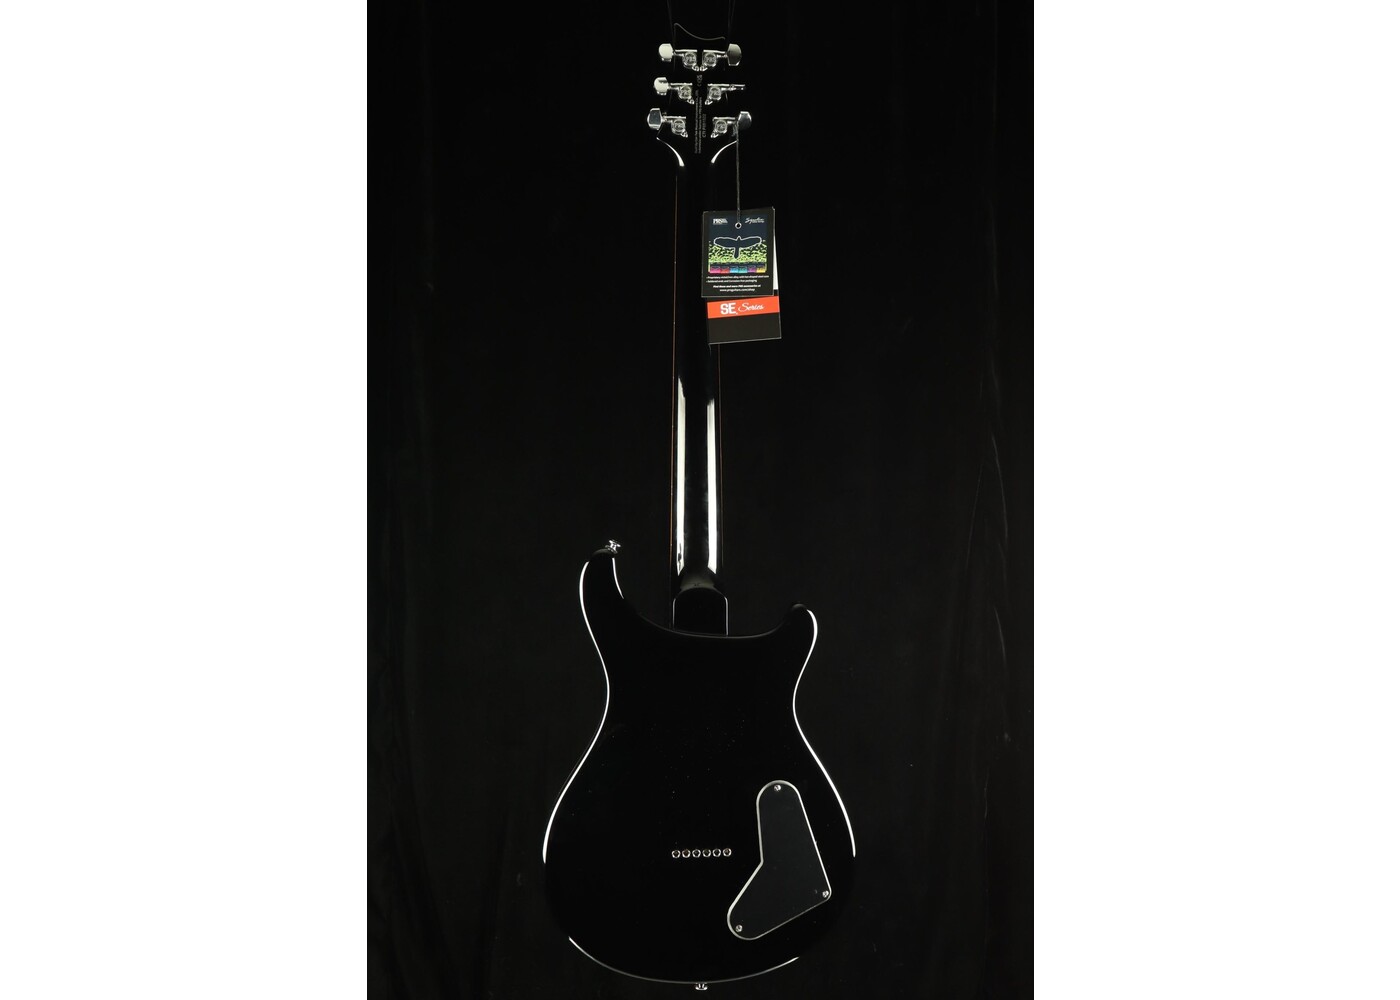 PRS Guitars PRS SE 277 "Lefty" Electric Guitar - Charcoal Burst